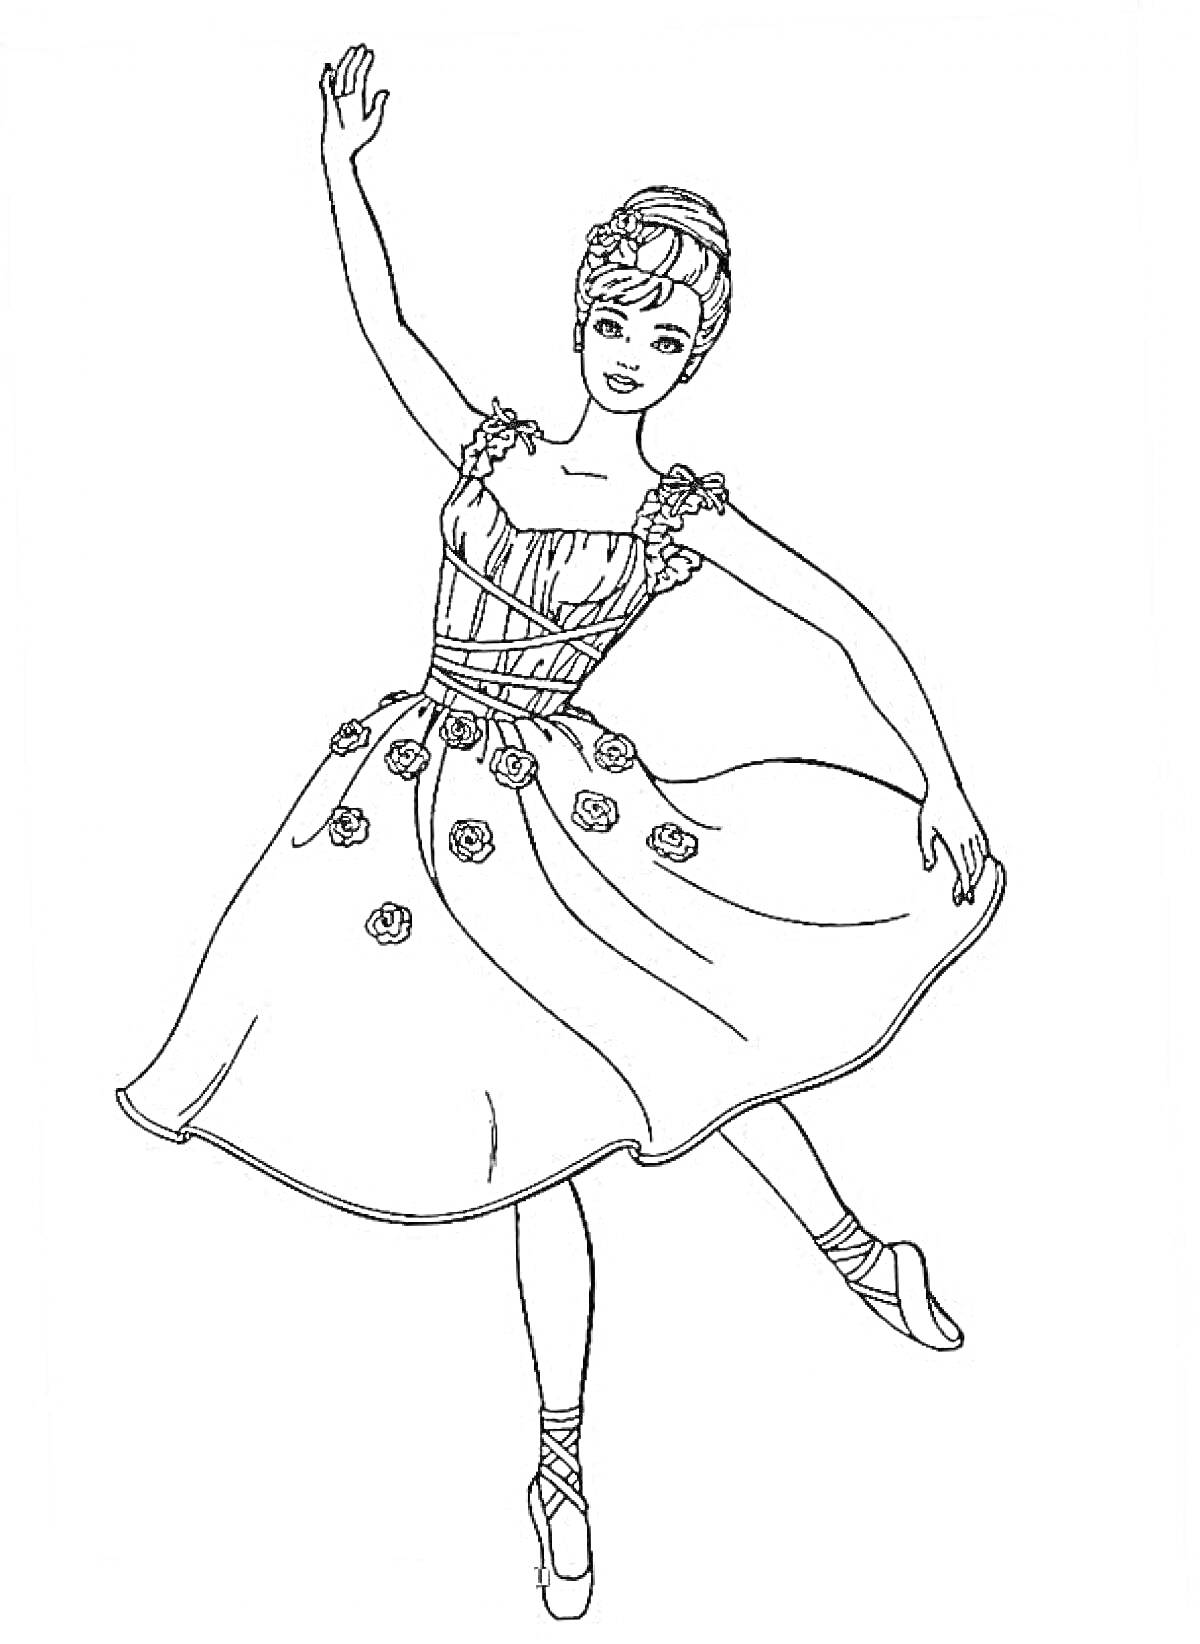 Балерина в классической позе с поднятой рукой и платьем с цветами